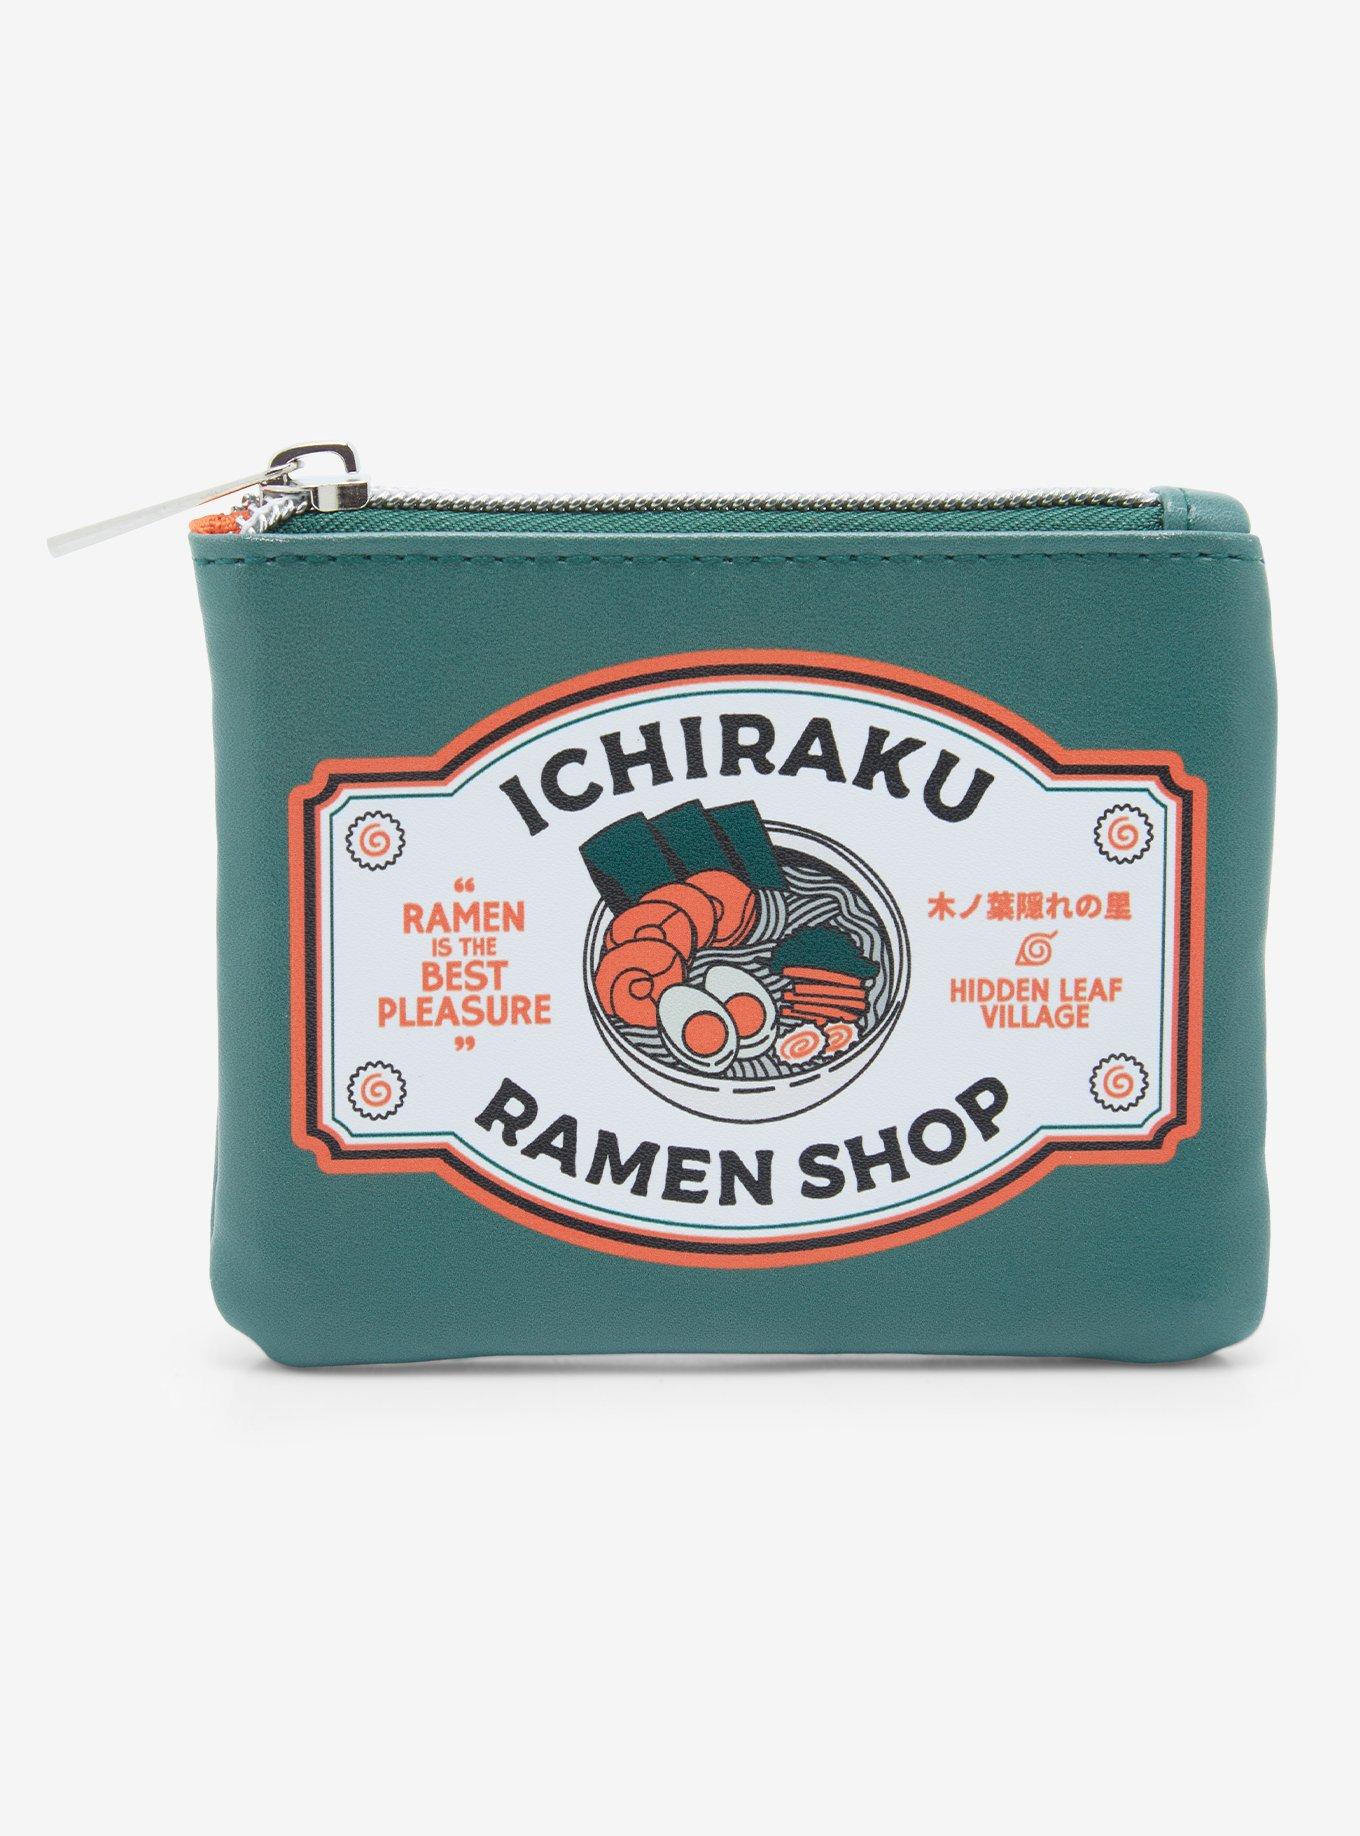 Naruto - Ichiraku Ramen Shop Mini Backpack